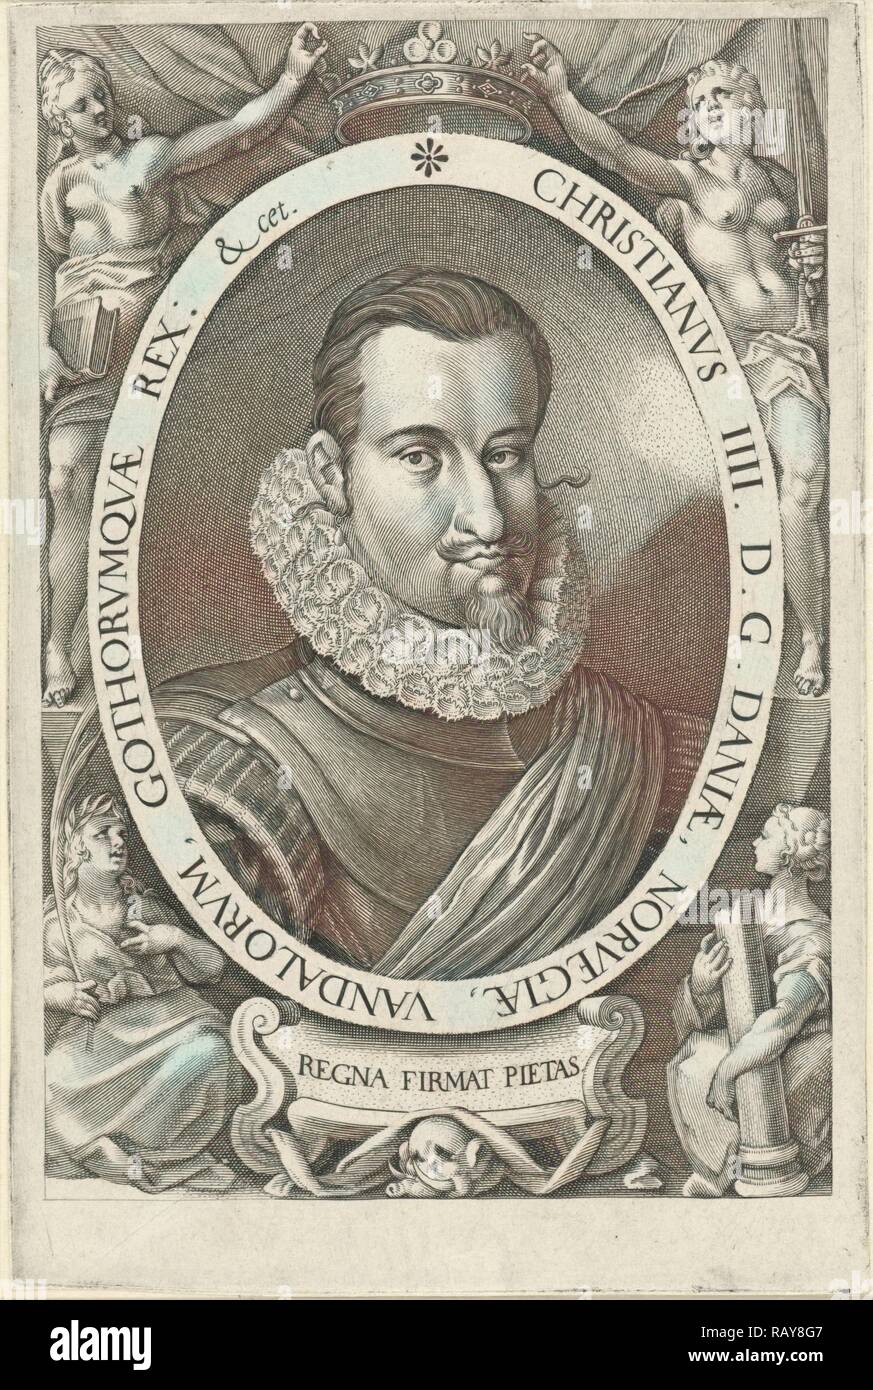 Ritratto di Re Cristiano IV di Danimarca e Norvegia, Jan Harmensz. Muller, Remmert Petersen, 1604 - 1608. Reinventato Foto Stock